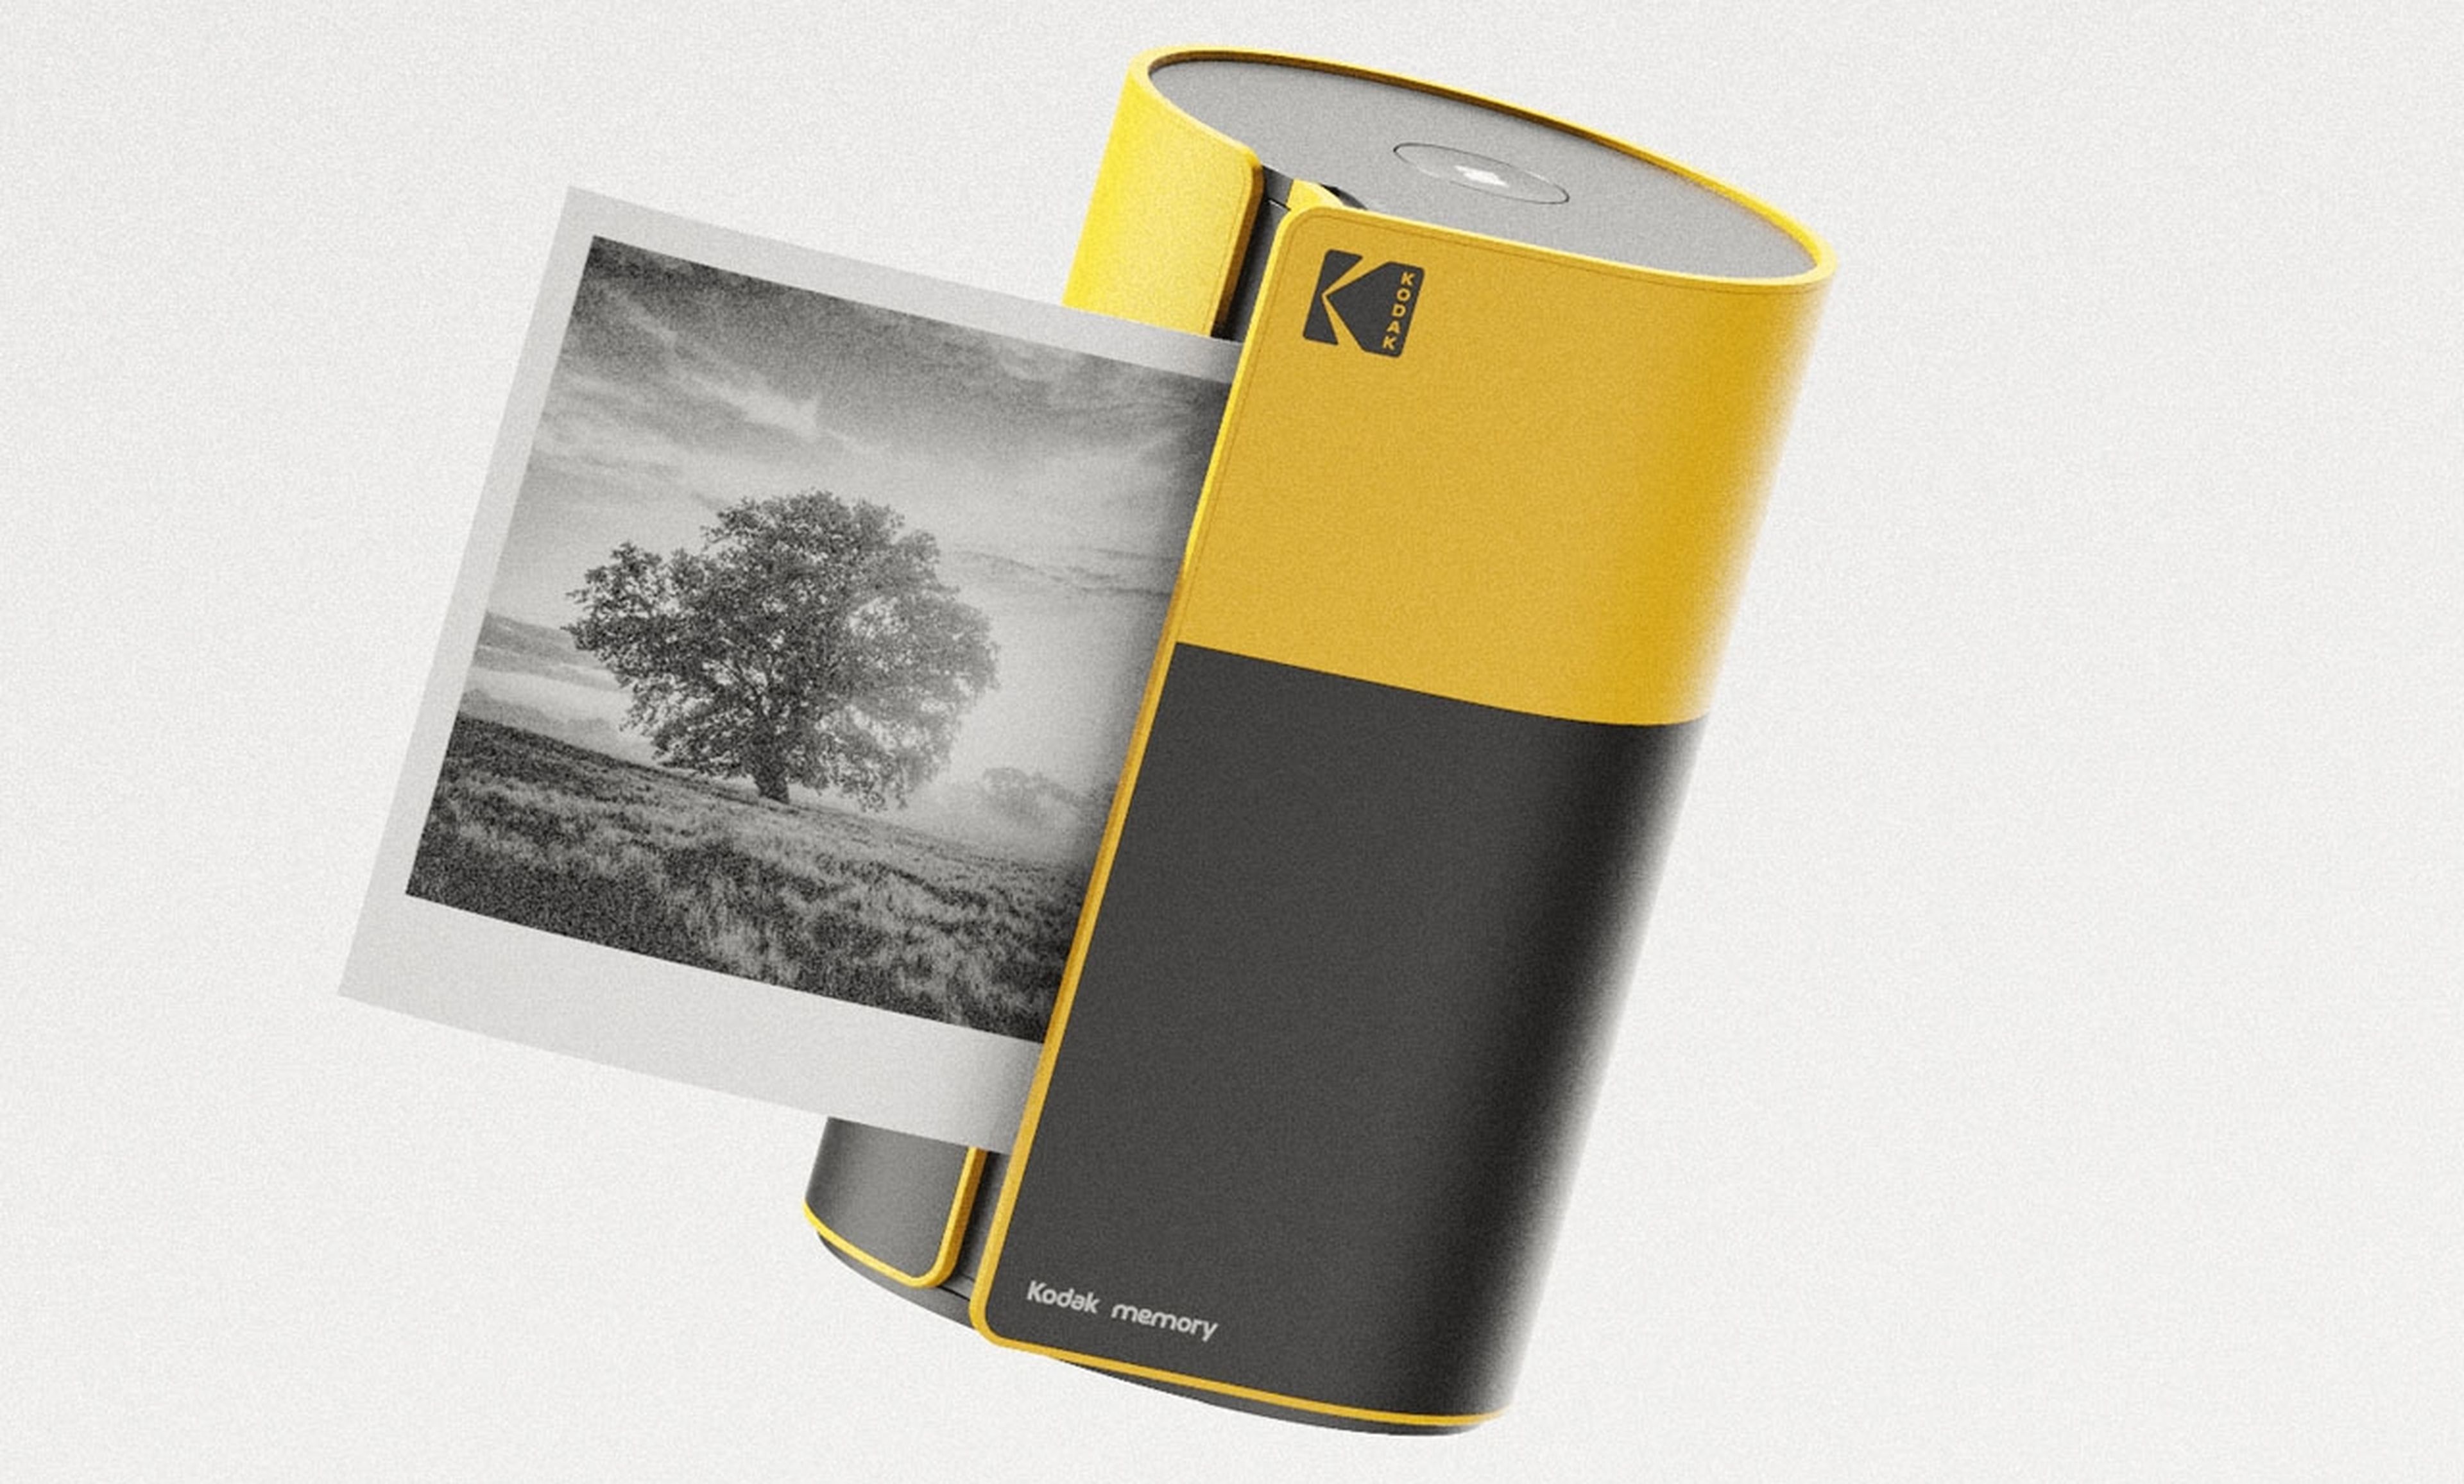 La impresora Kodak Memory es un estallido de nostalgia